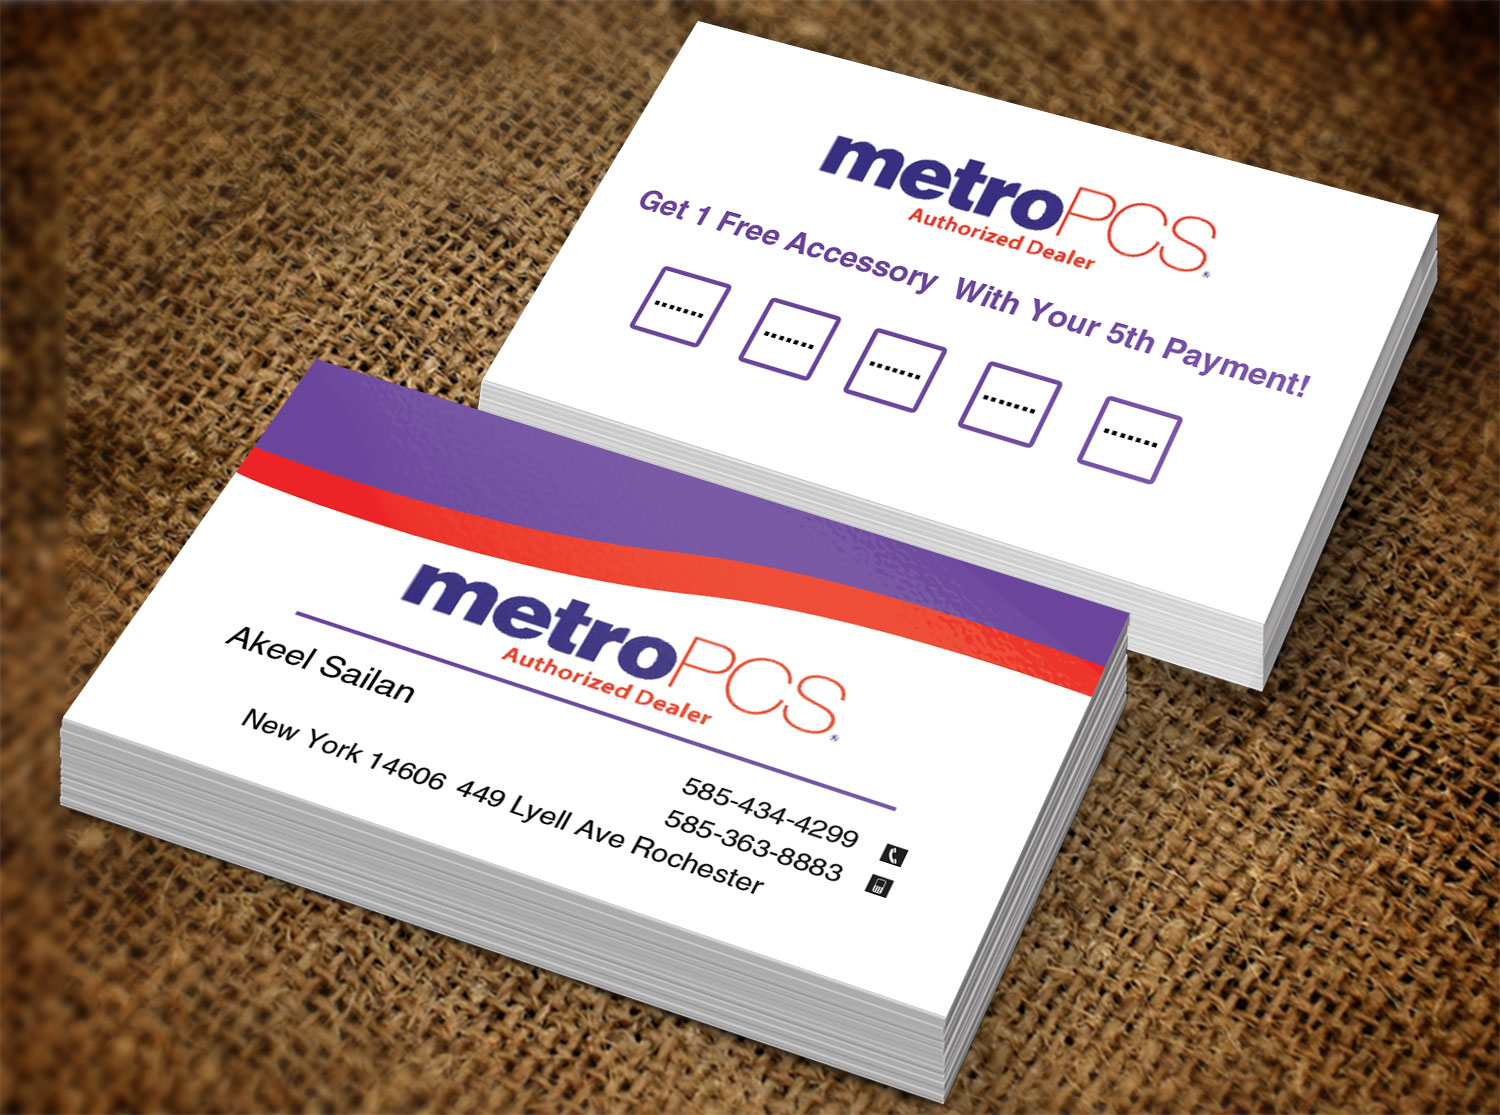 metropcs business cards 2